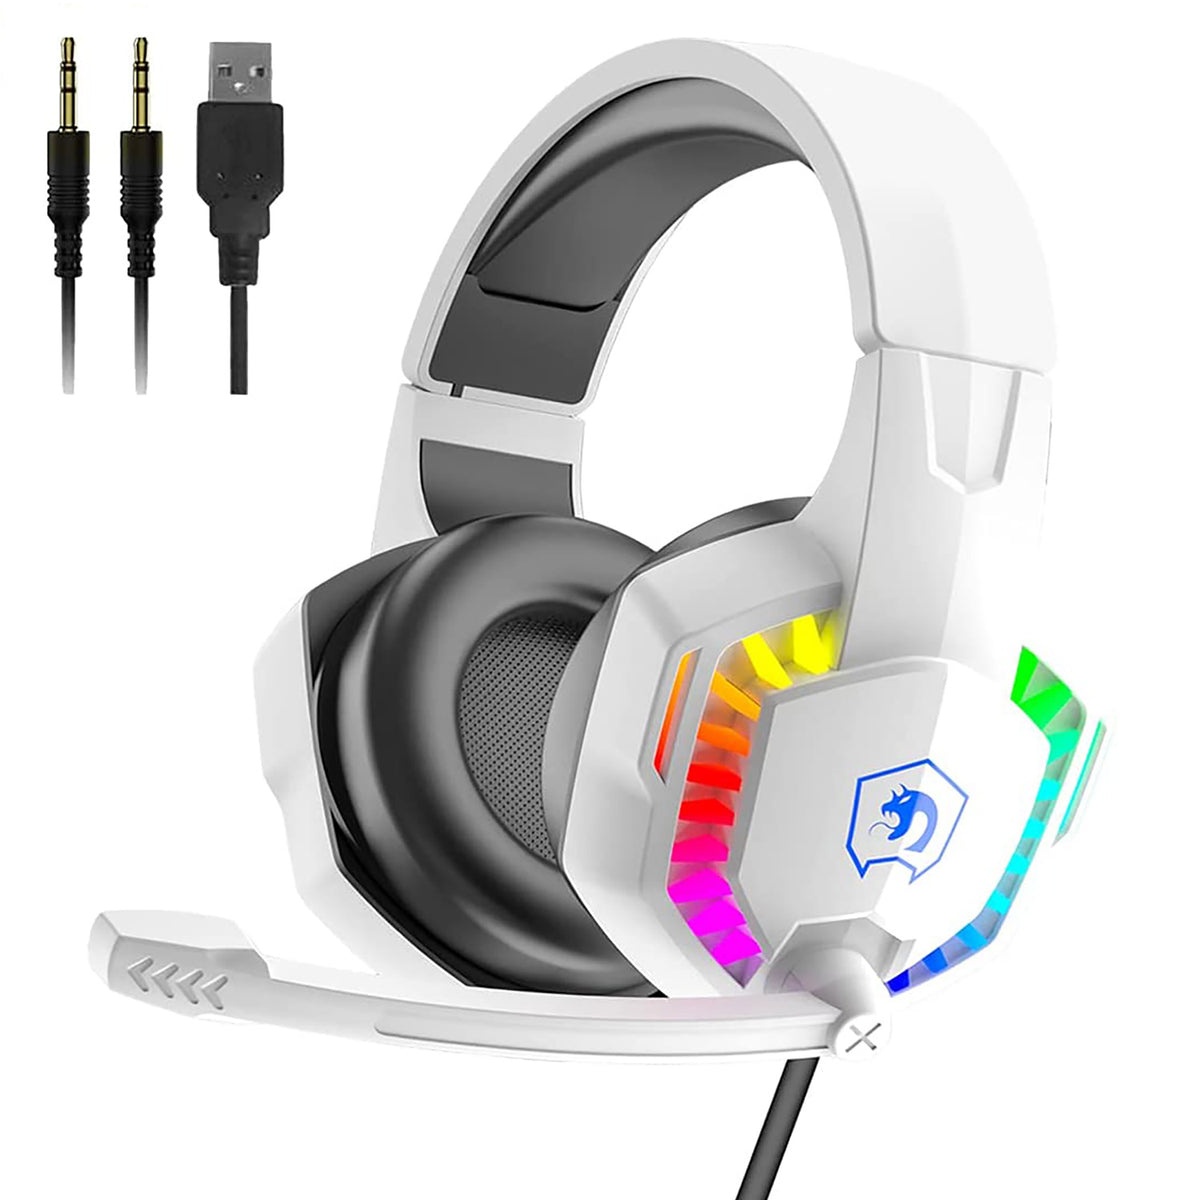 Casque de jeu filaire, casque antibruit sur l'oreille avec microphone pour manette PS4 PC Xbox One PS5, rétroéclairage LED arc-en-ciel, basses surround, cache-oreilles à mémoire douce pour ordinateur portable Mac jeux (blanc)